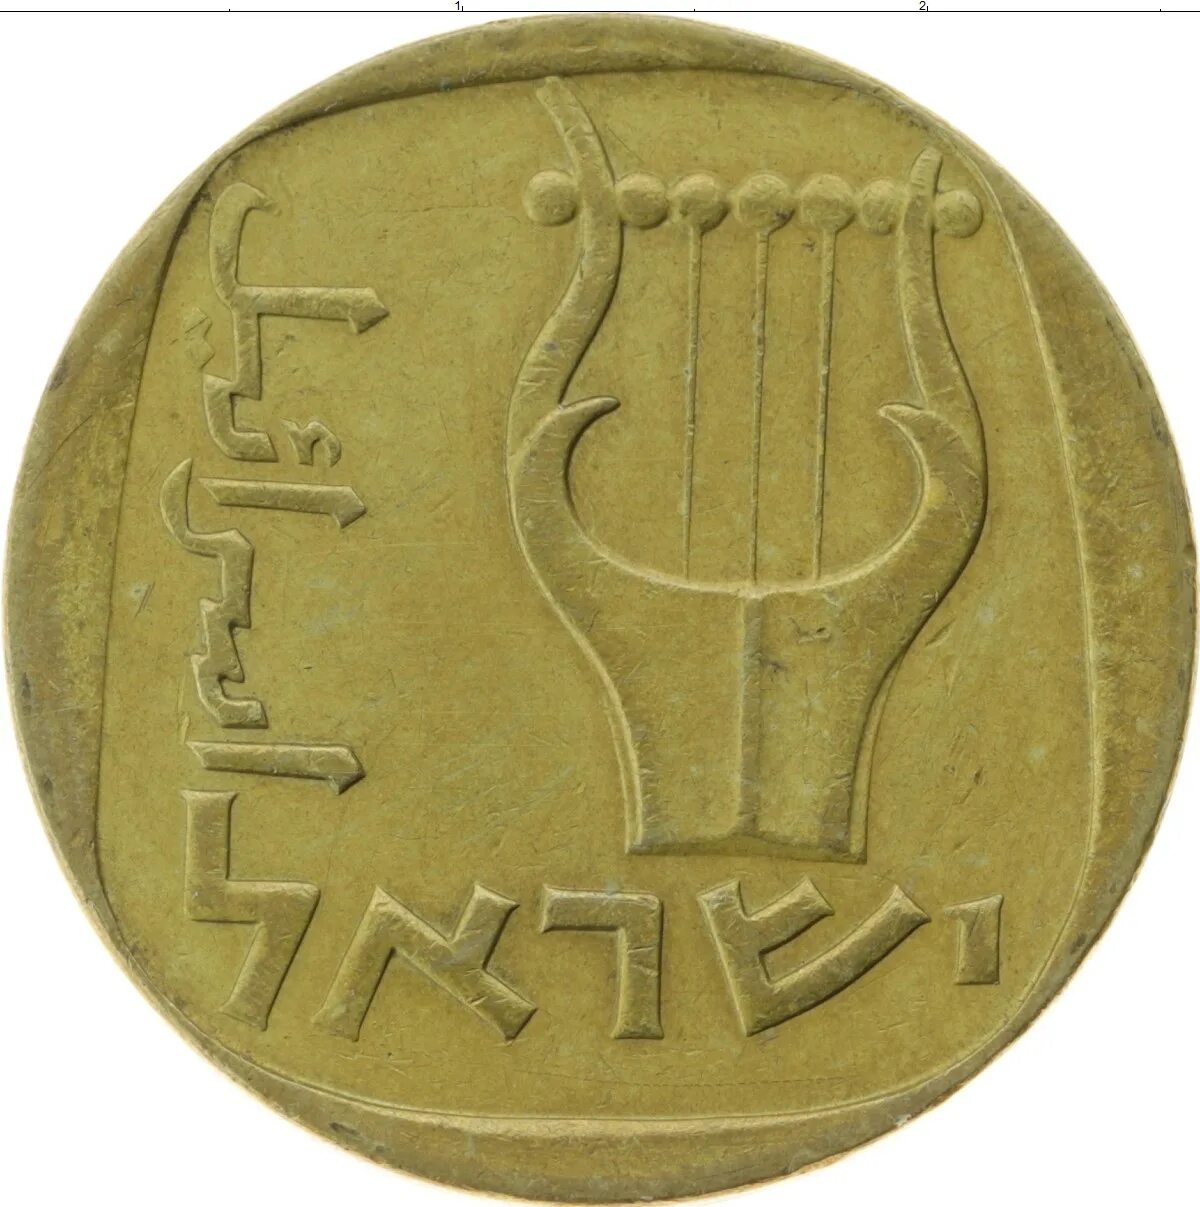 Монета израиля 4. Агорот монеты Израиля. Монетка в Израиле. Древние монеты Израиля.